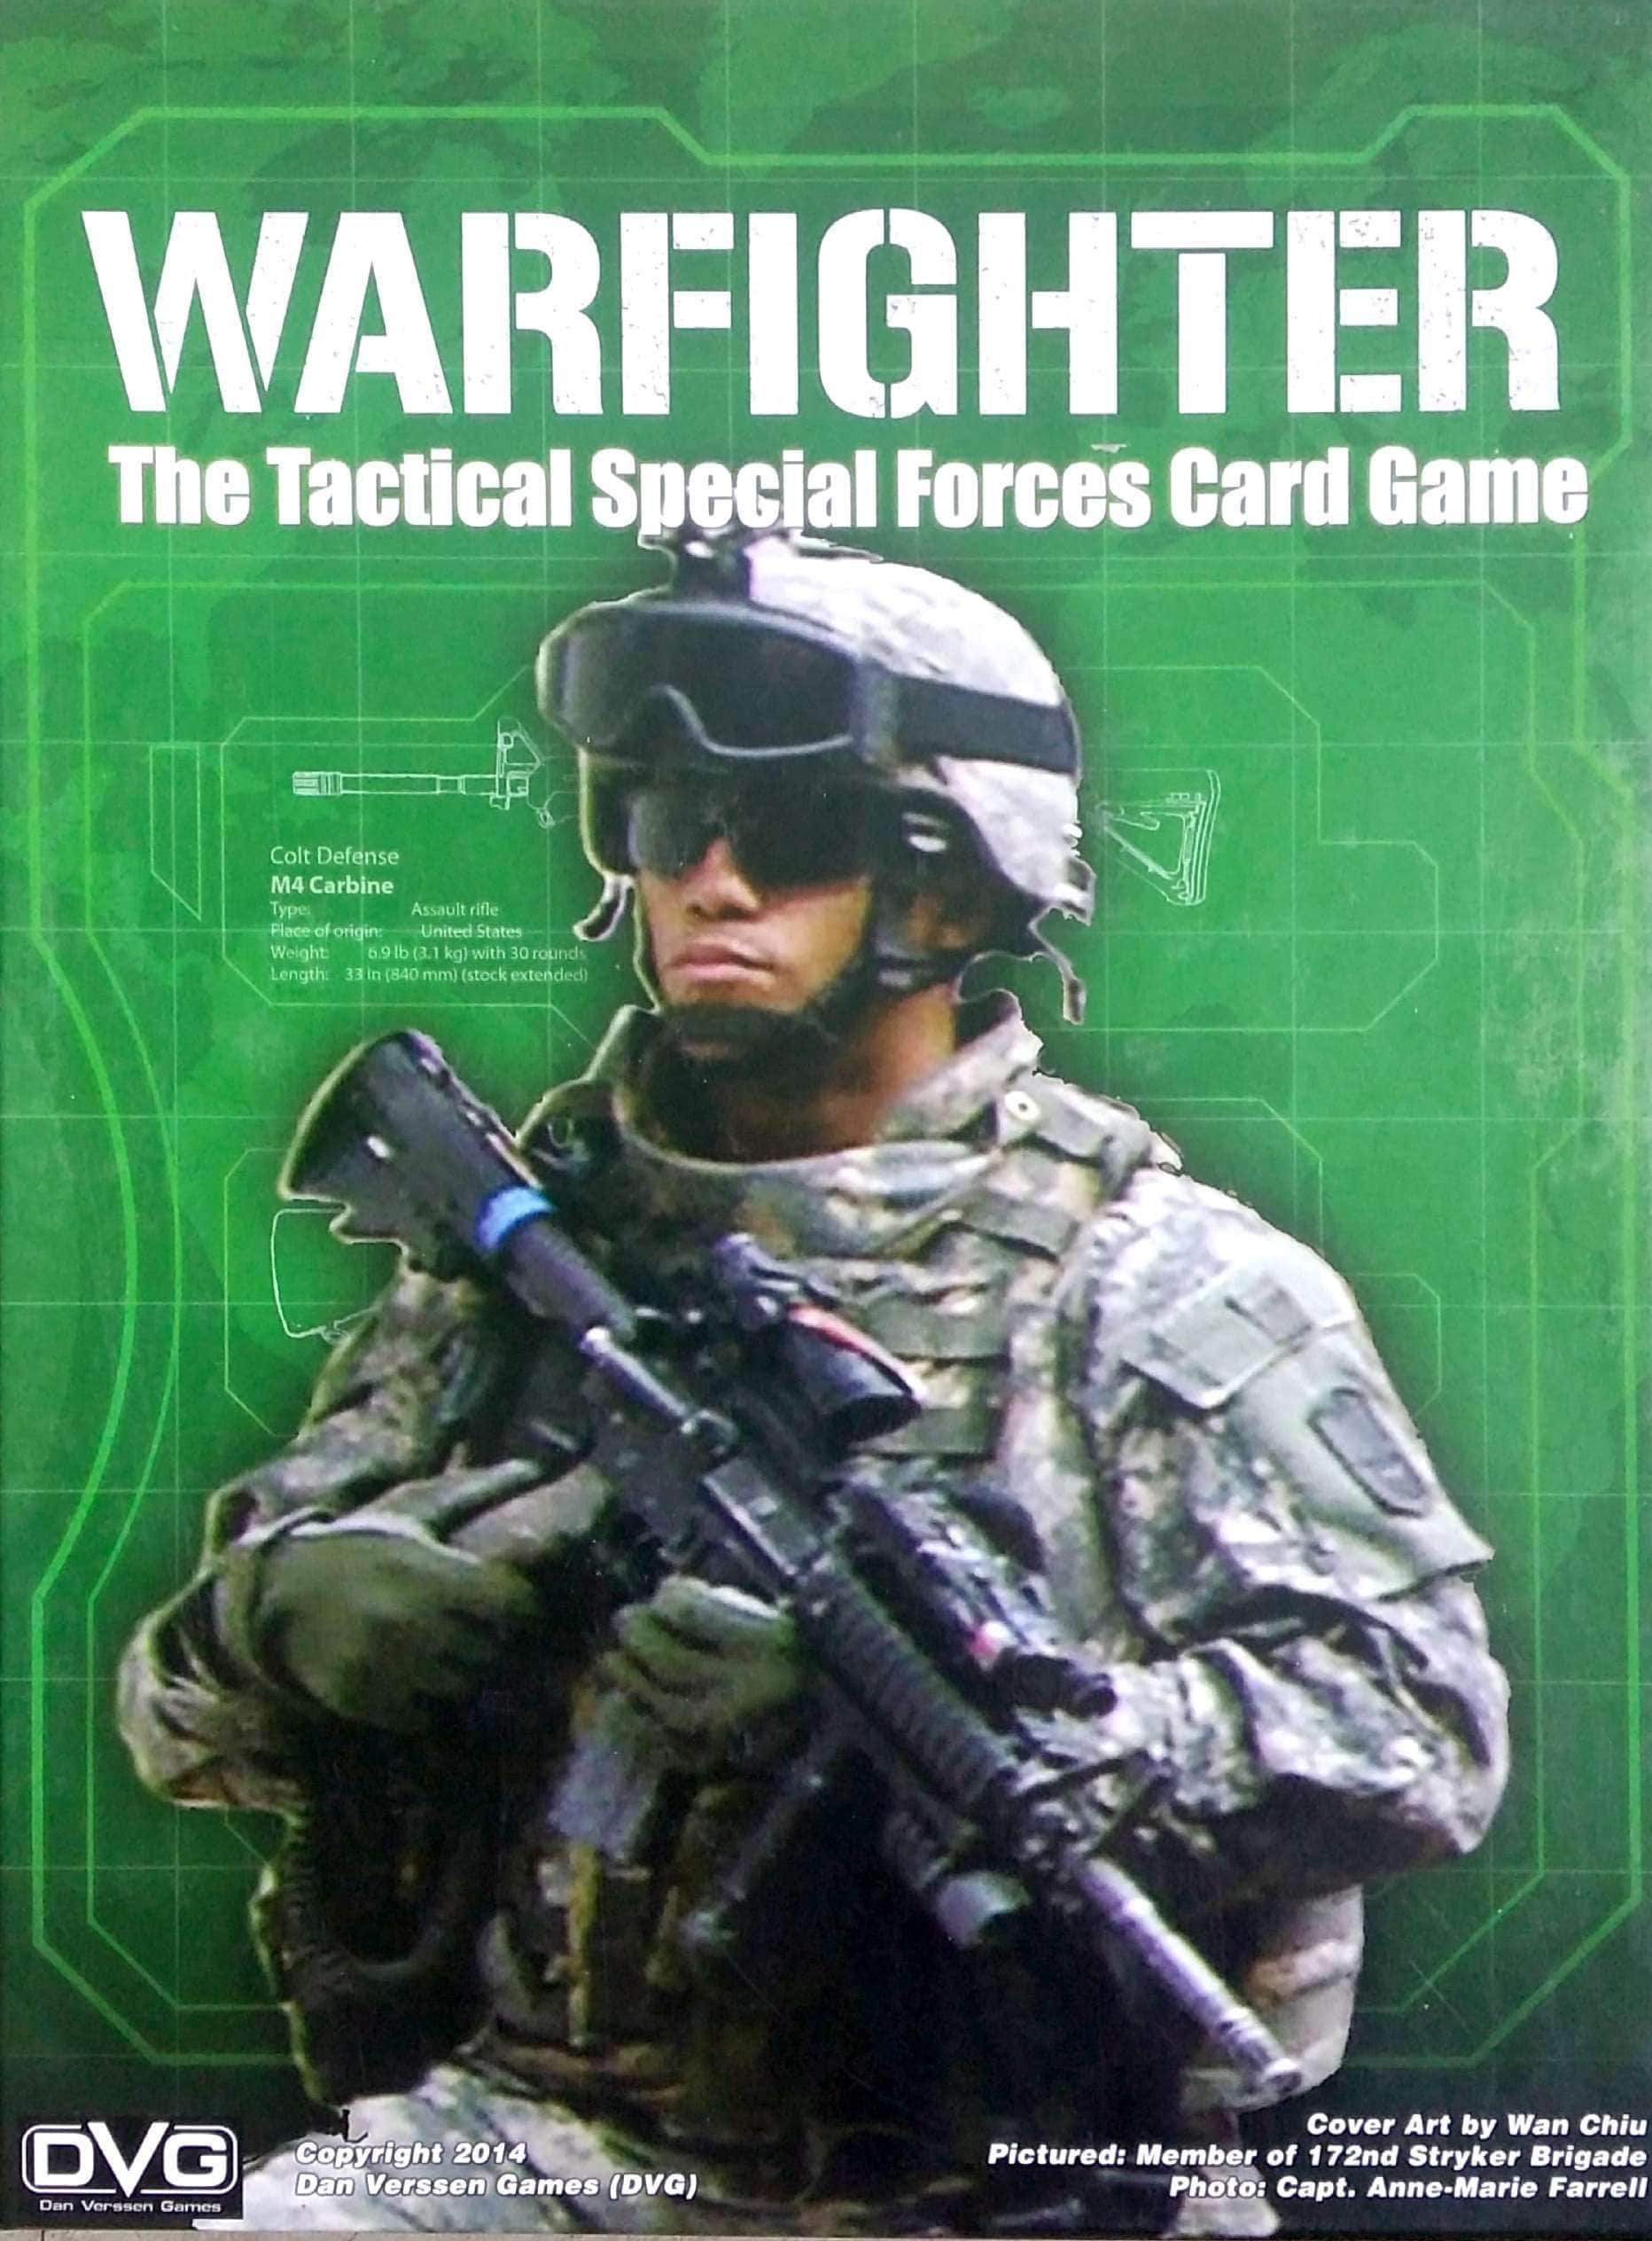 Warfighter: A Tactical Special Forces kártyajáték (Kickstarter Special) Kickstarter társasjáték Dan Verssen Games (DVG) KS800088A